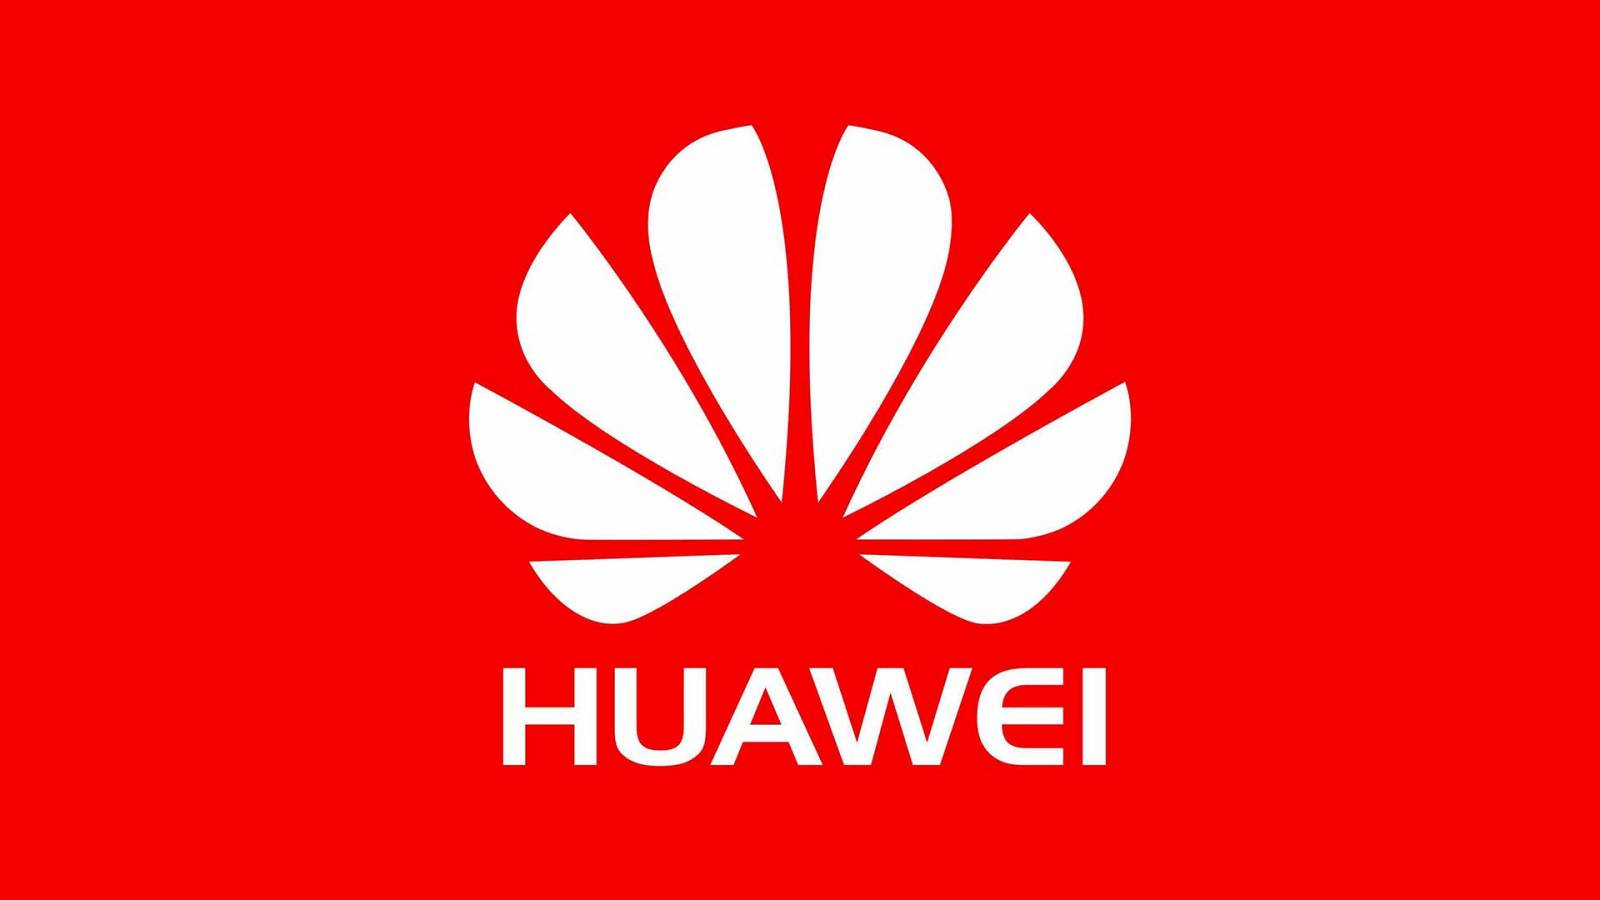 Huawei reaction